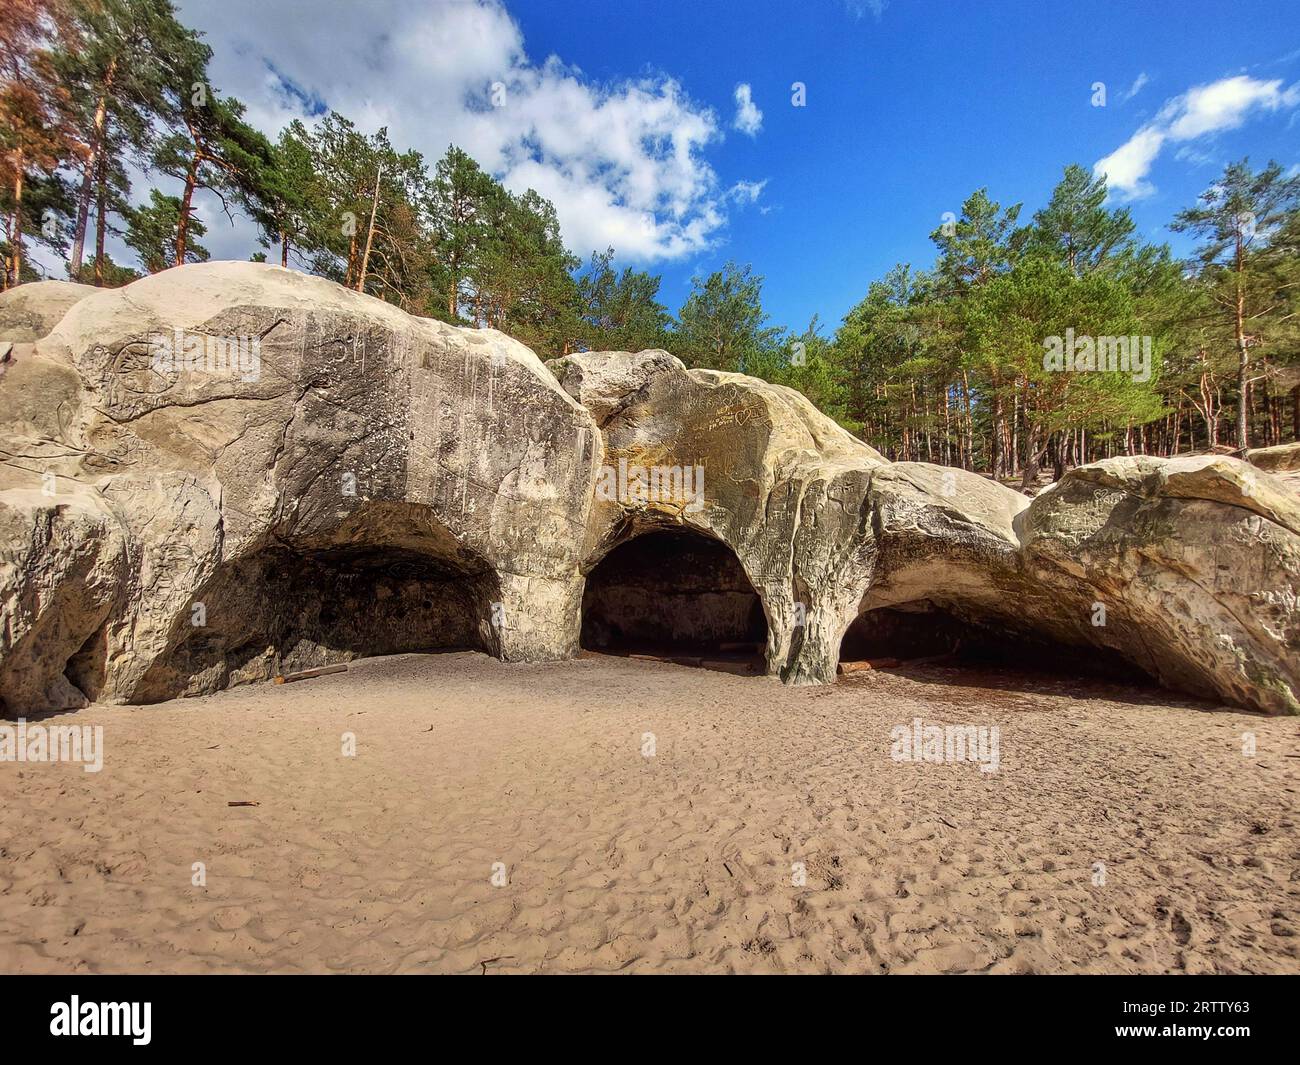 Grottes de pierre de sable près de Blankenburg dans les montagnes du Harz en Allemagne. Banque D'Images